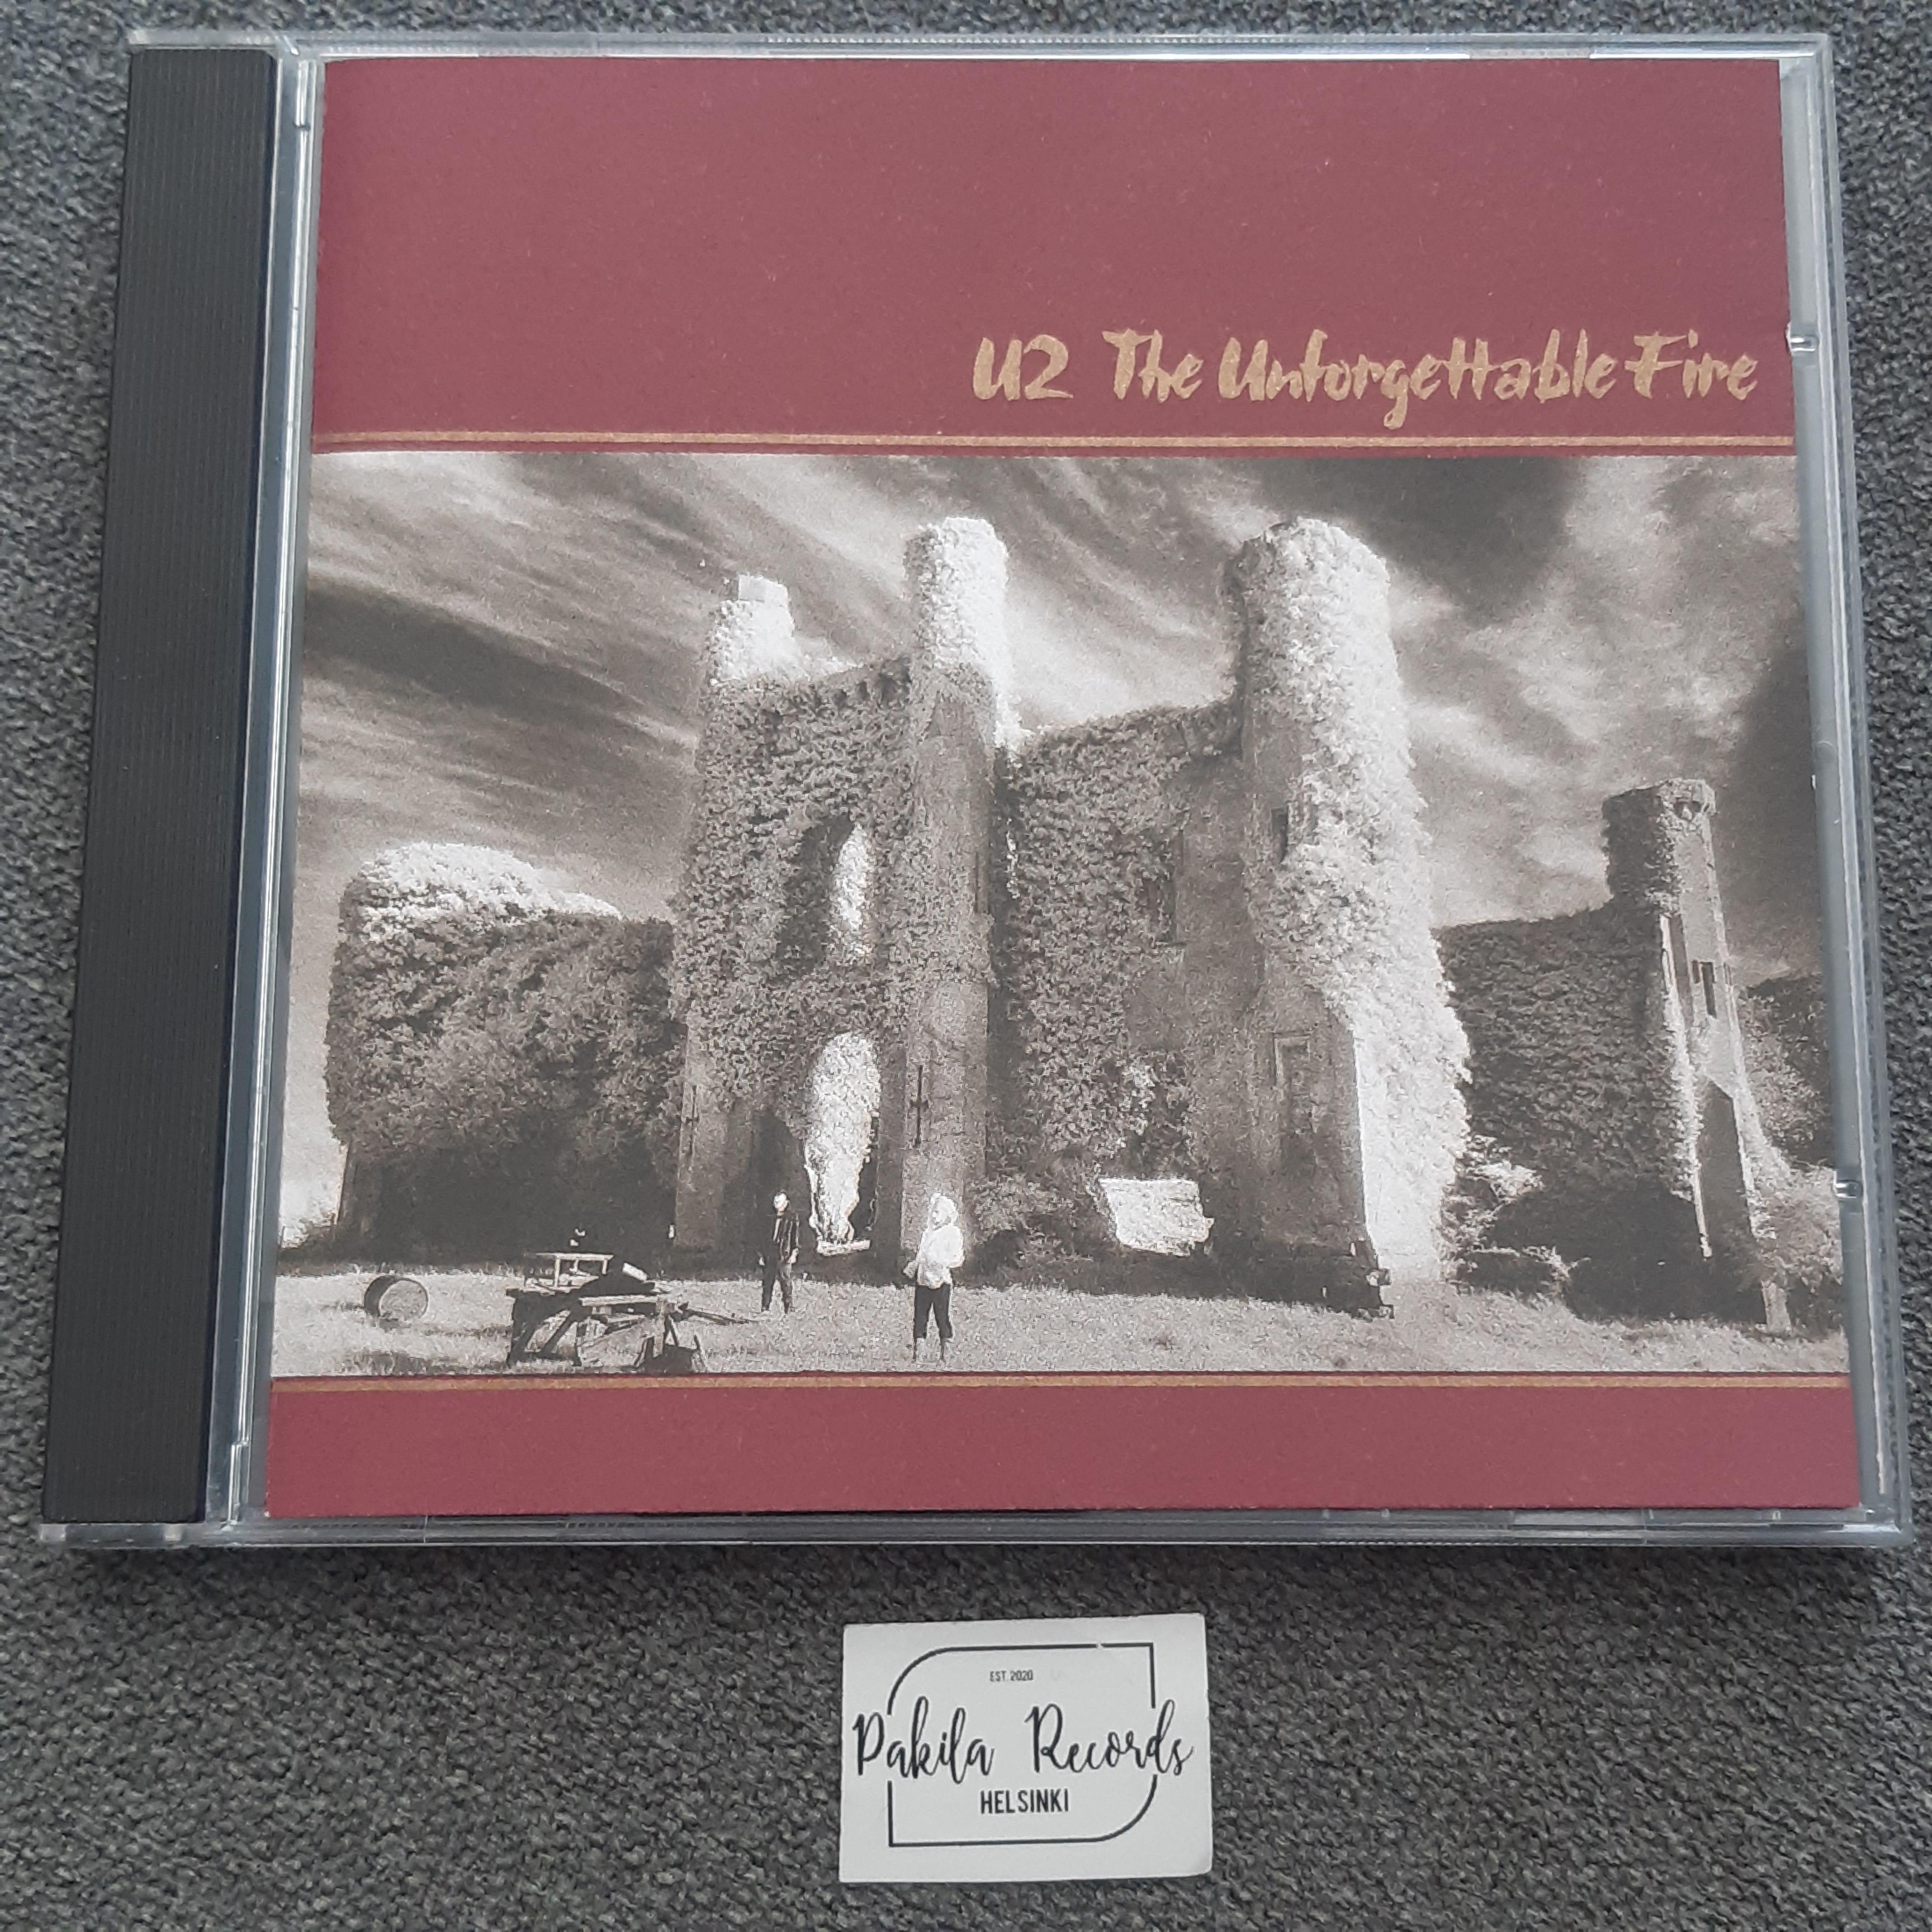 U2 - The Unforgettable Fire - CD (käytetty)